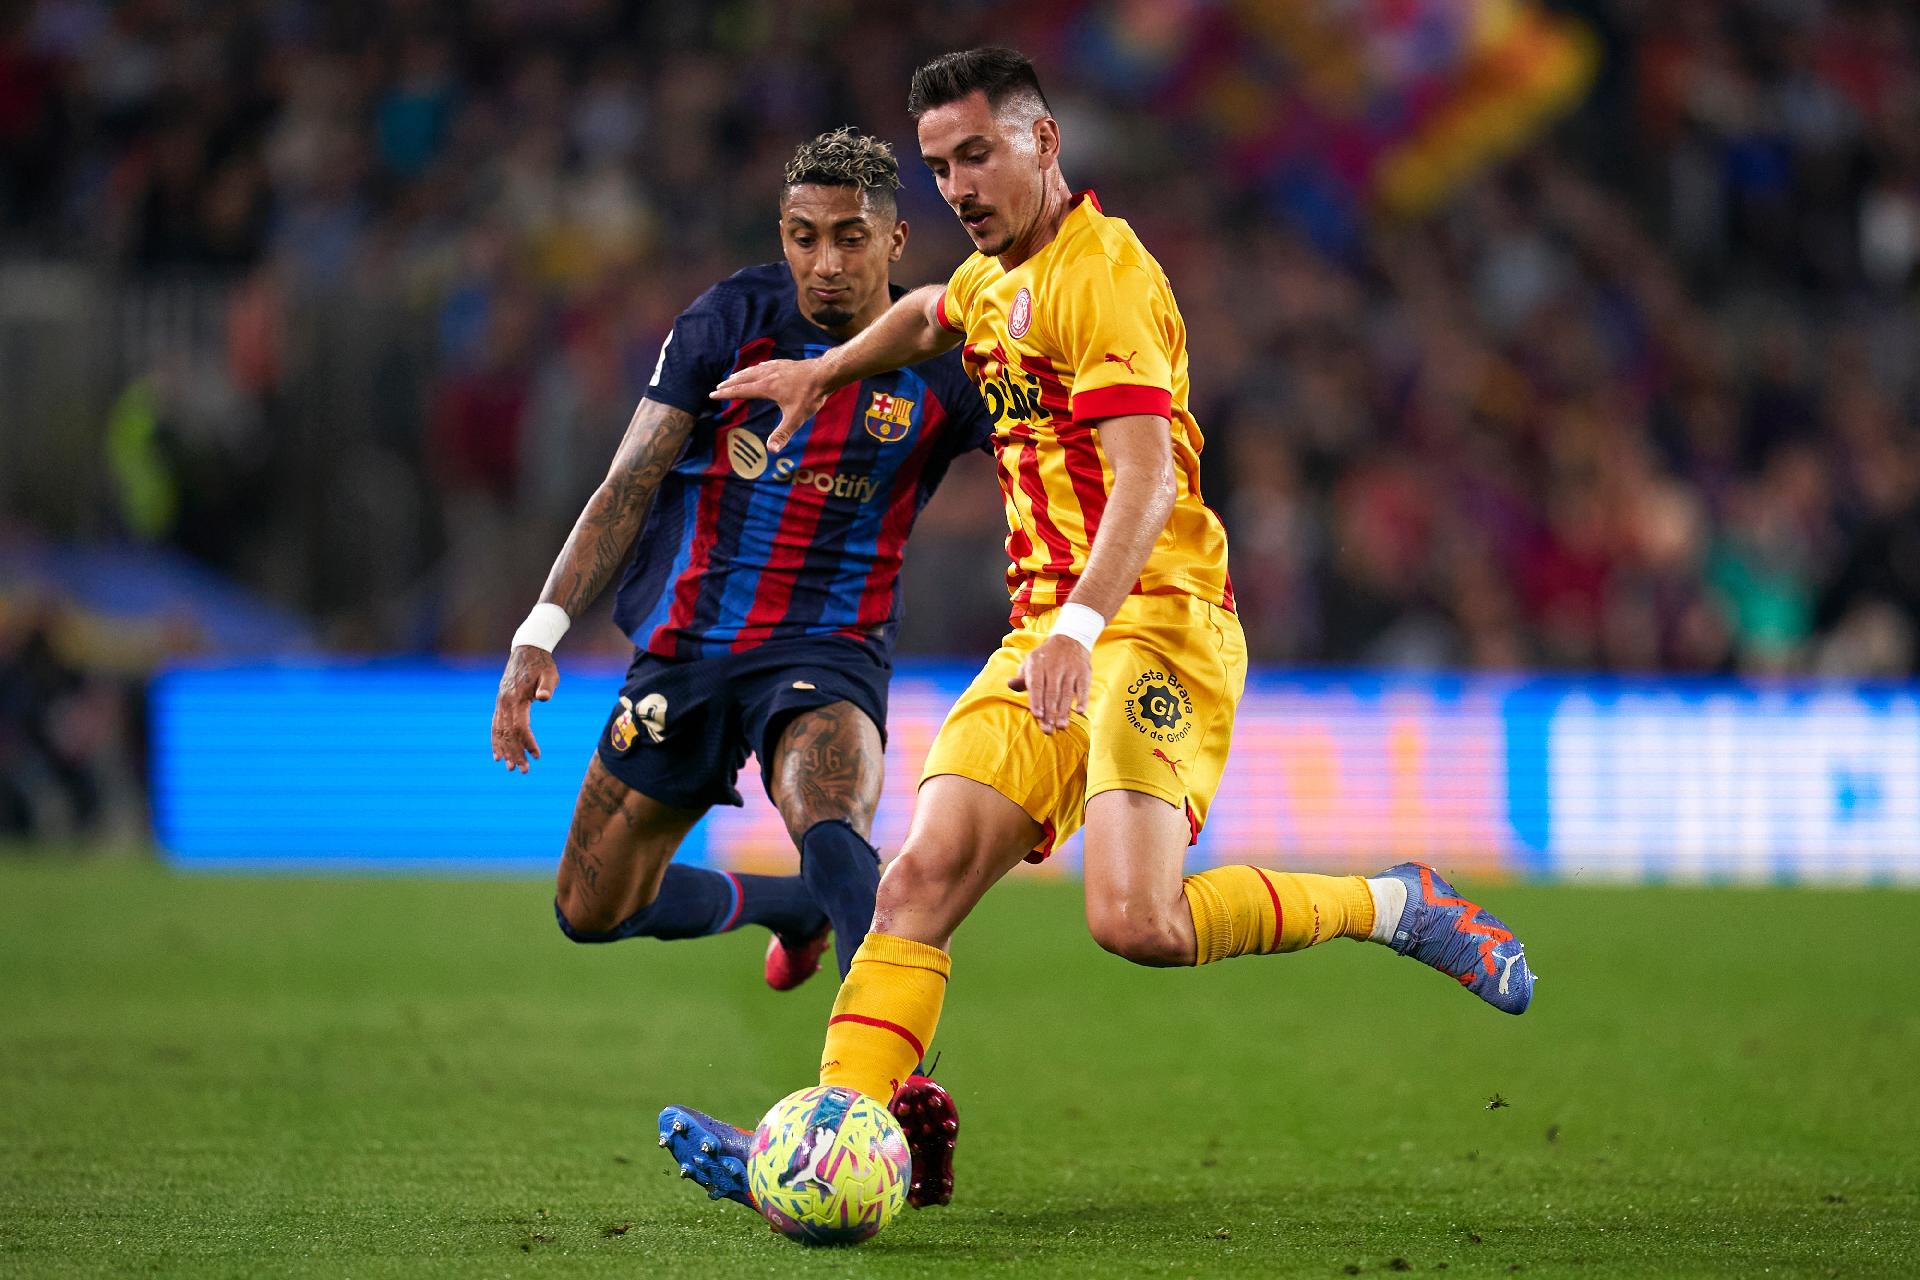 Xavi cobra eficiência do Barcelona após empate contra o Valencia